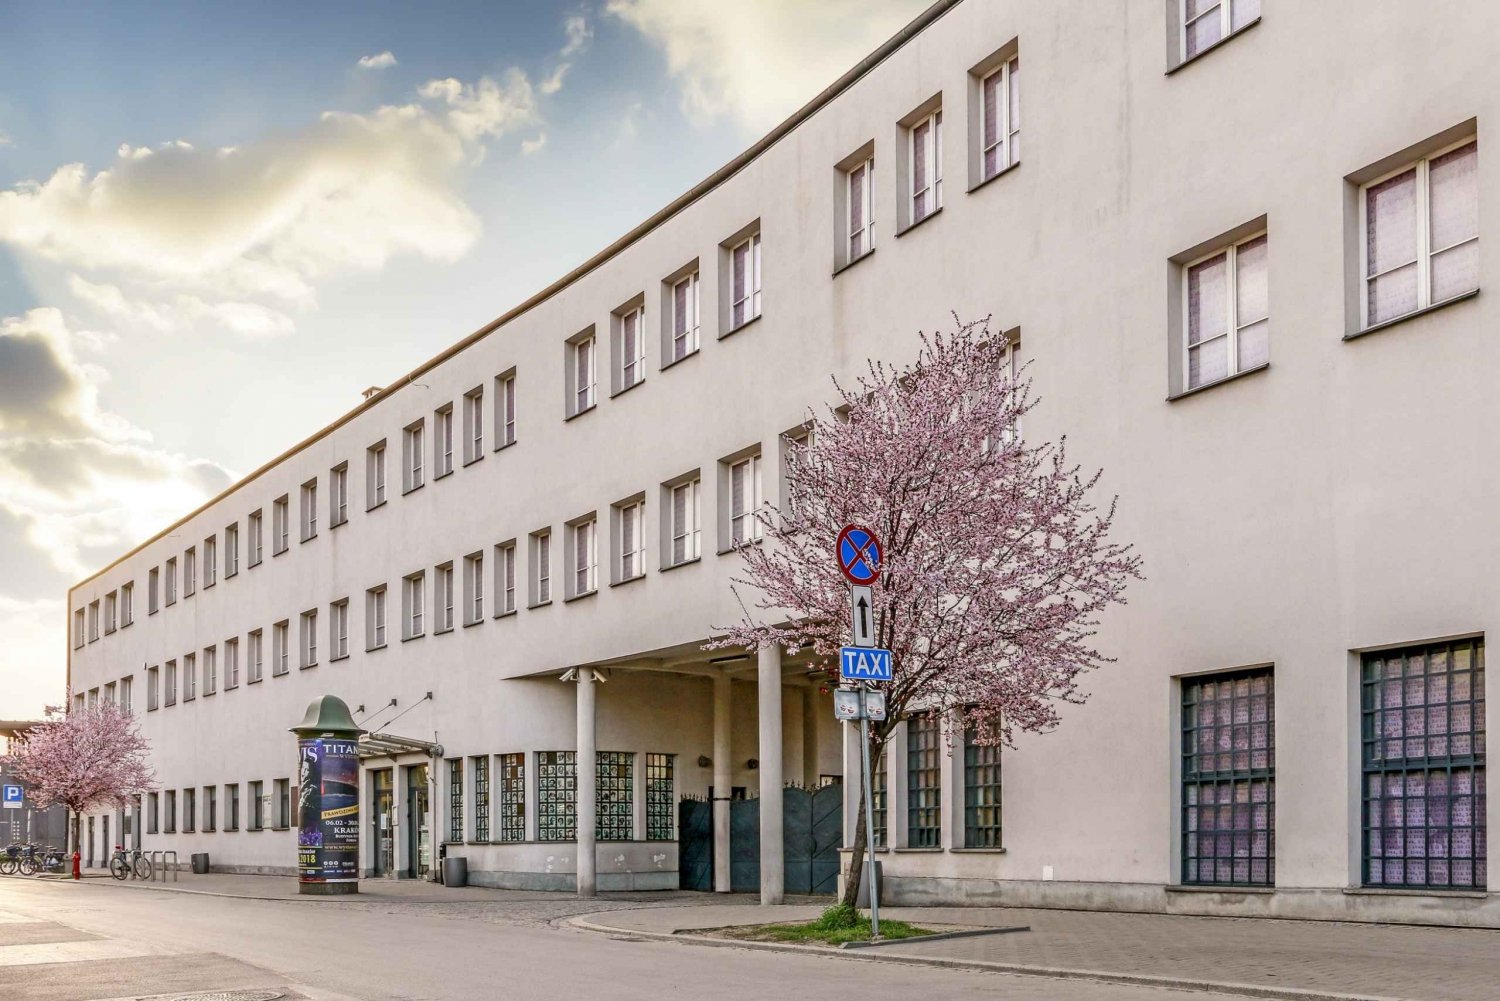 Krakova: Schindlerin tehtaan kiertoajelu ja pääsylippu.